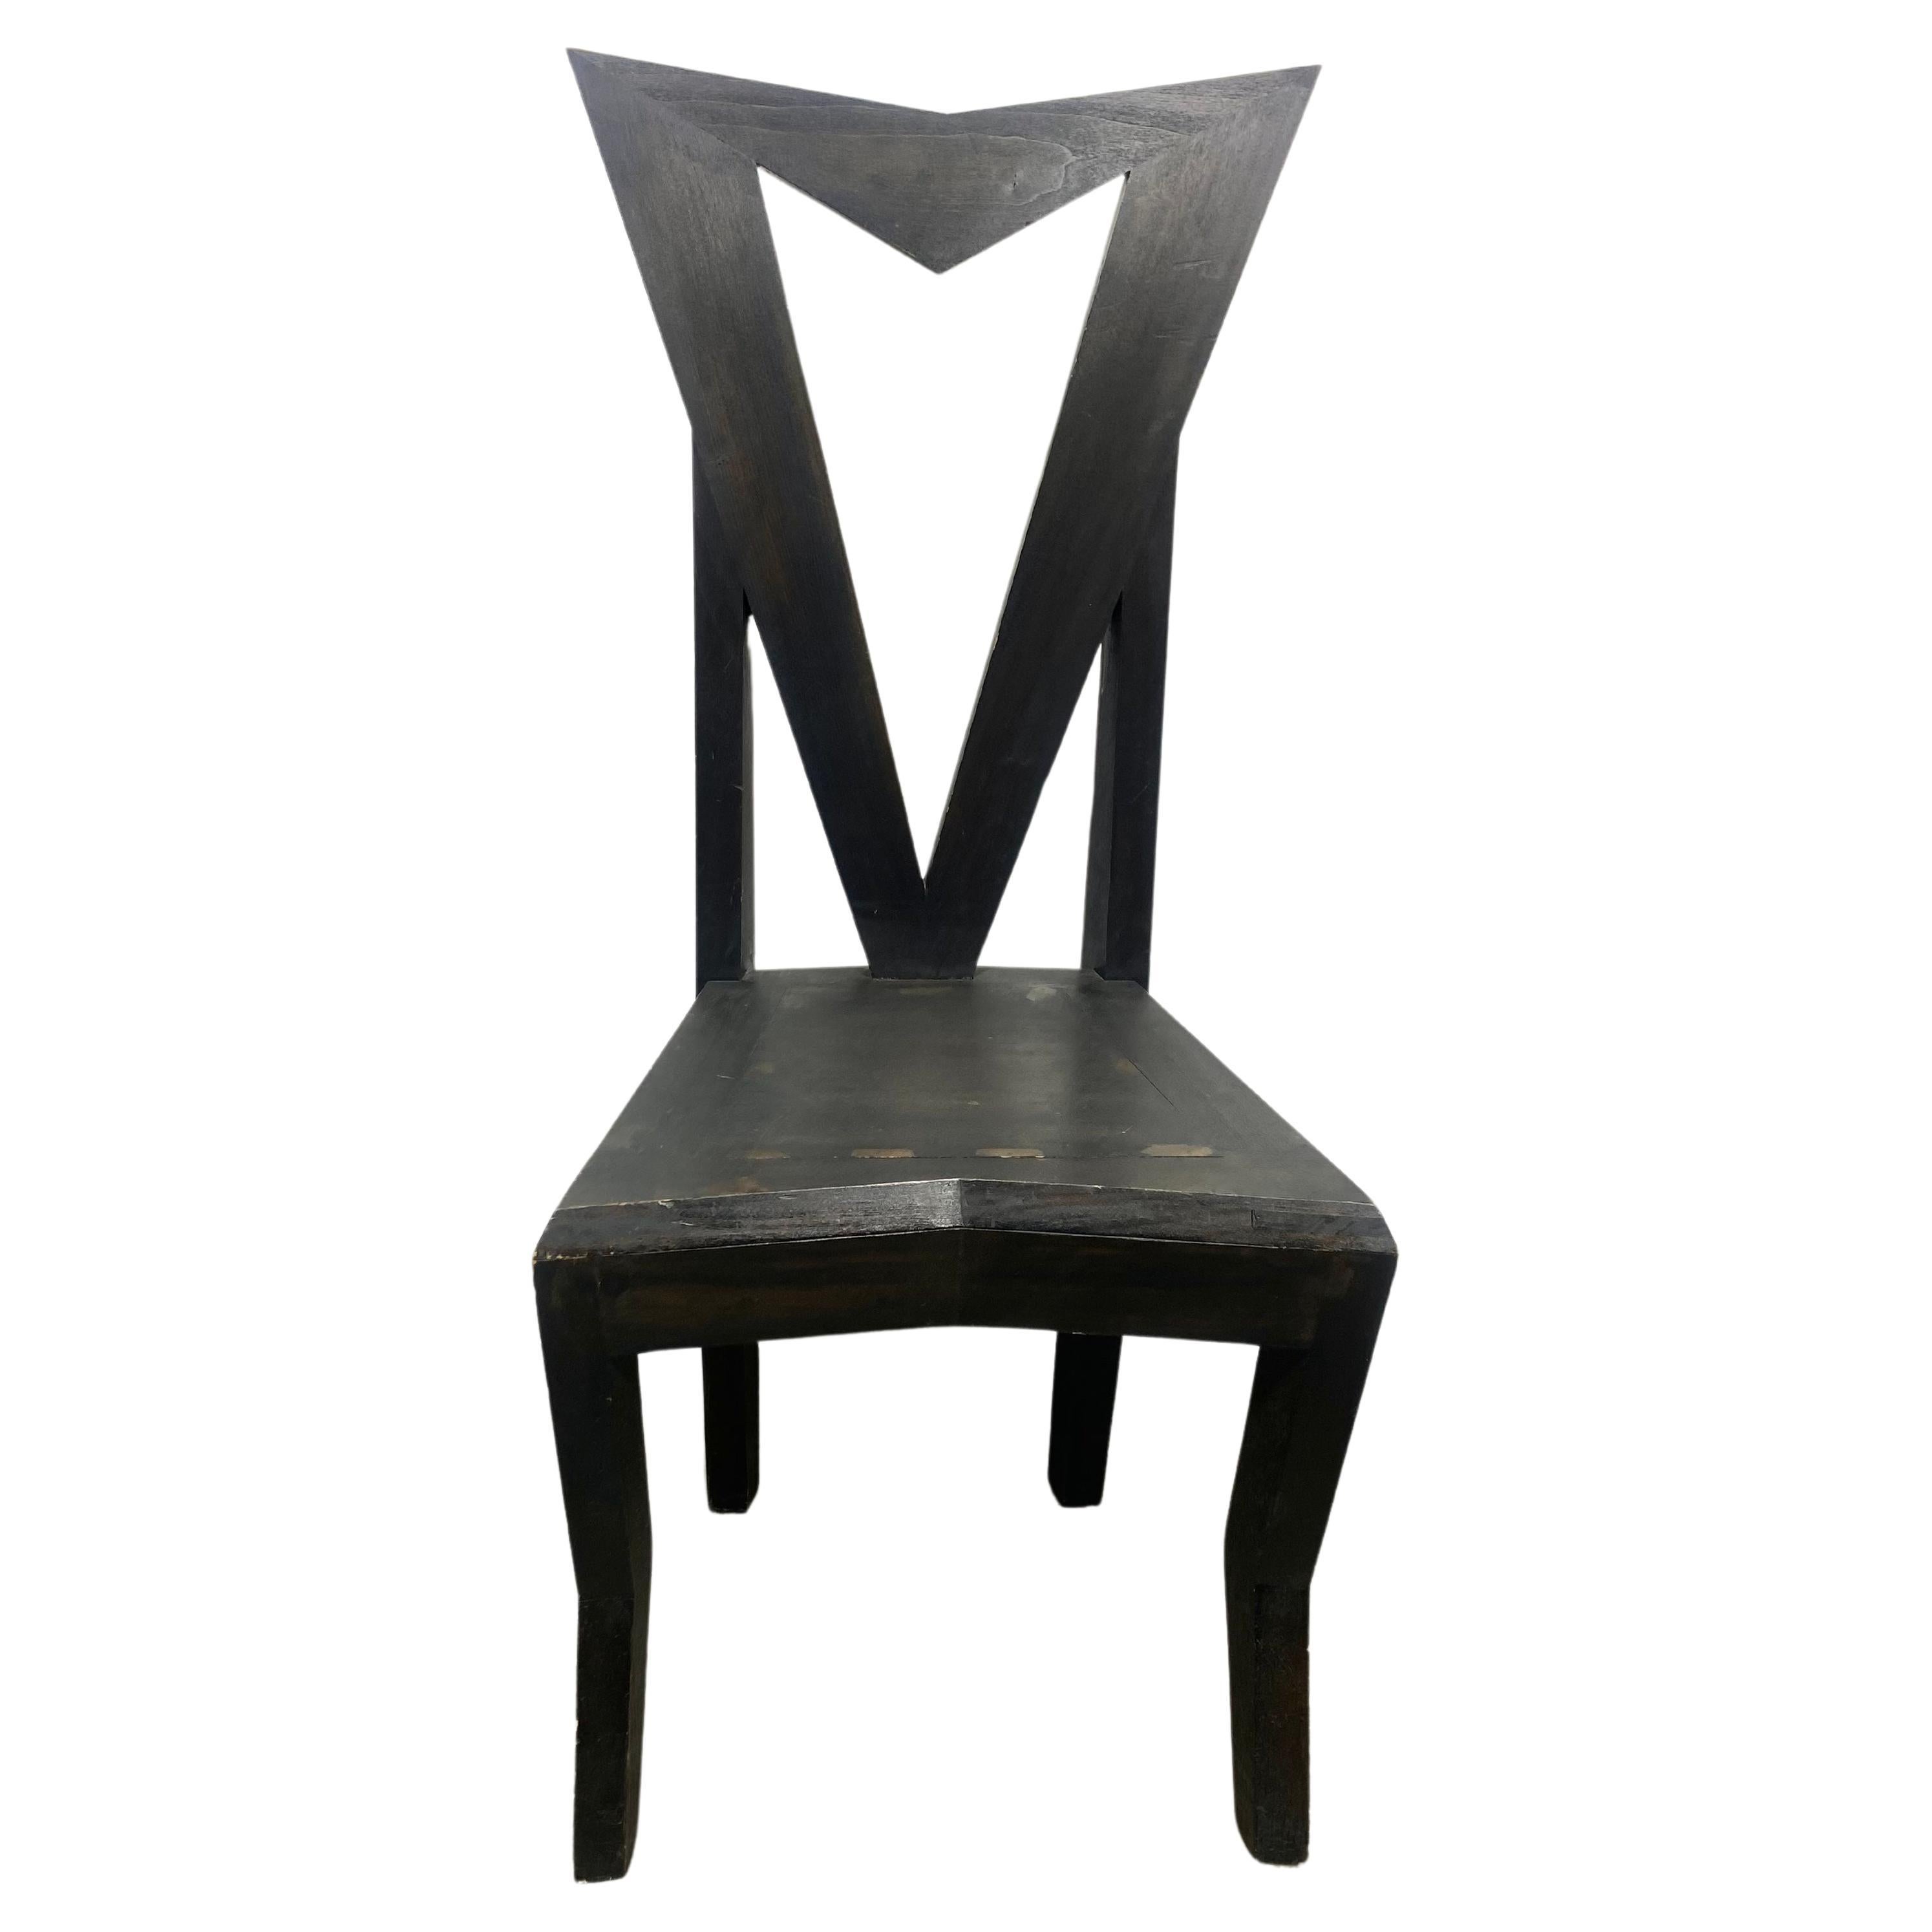 Tschechischer kubistischer Beistellstuhl, entworfen von Pavel Janak für Modernista